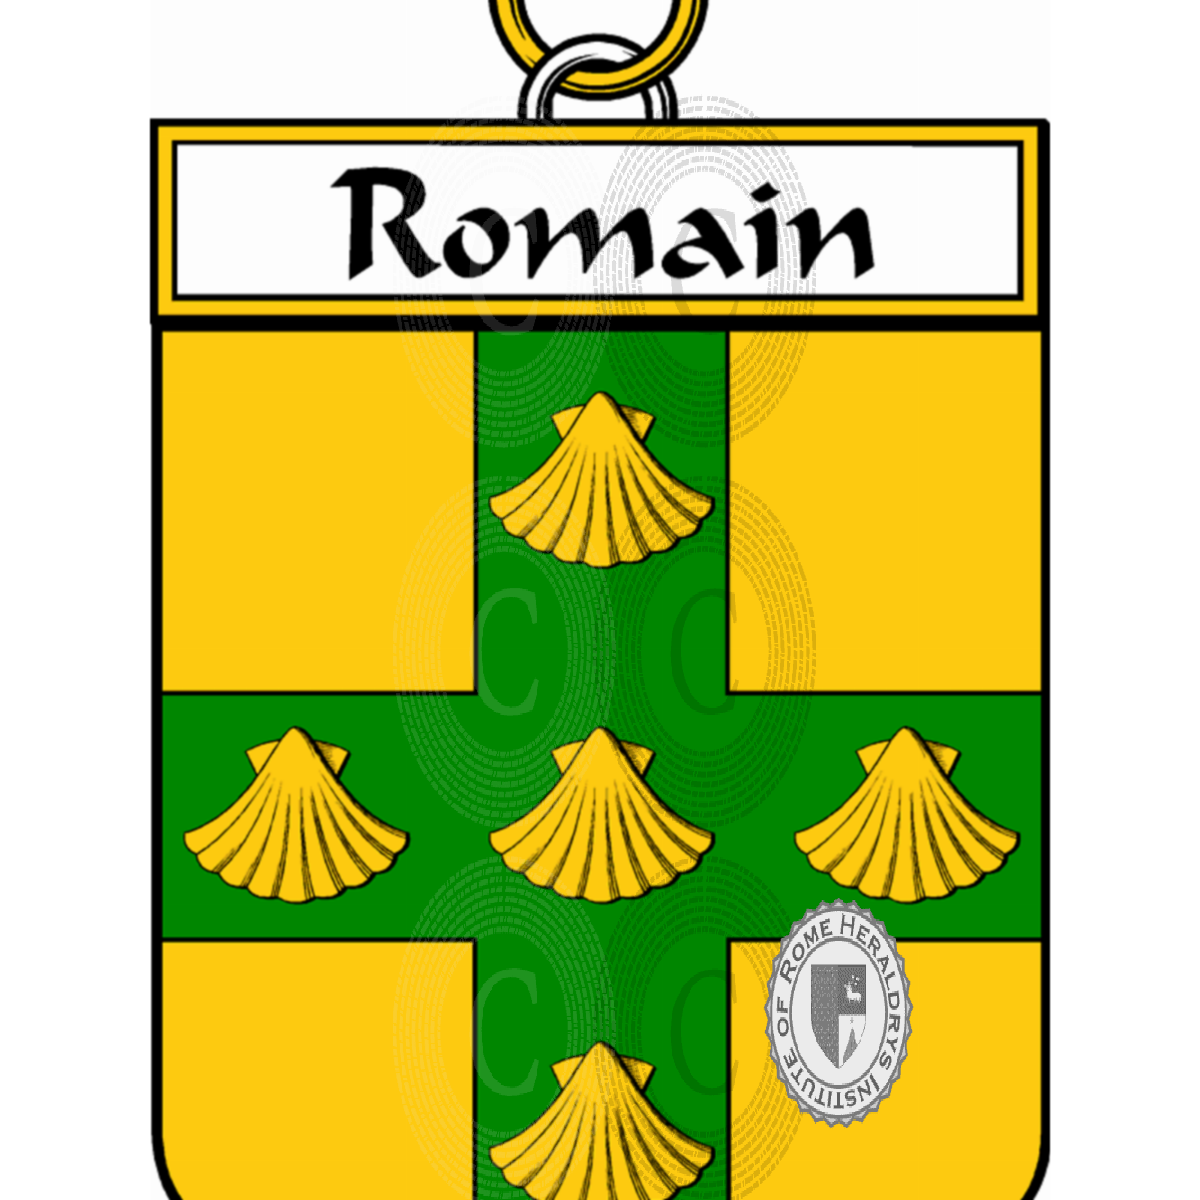 Stemma della famigliade Romain, de Romain,Romanel